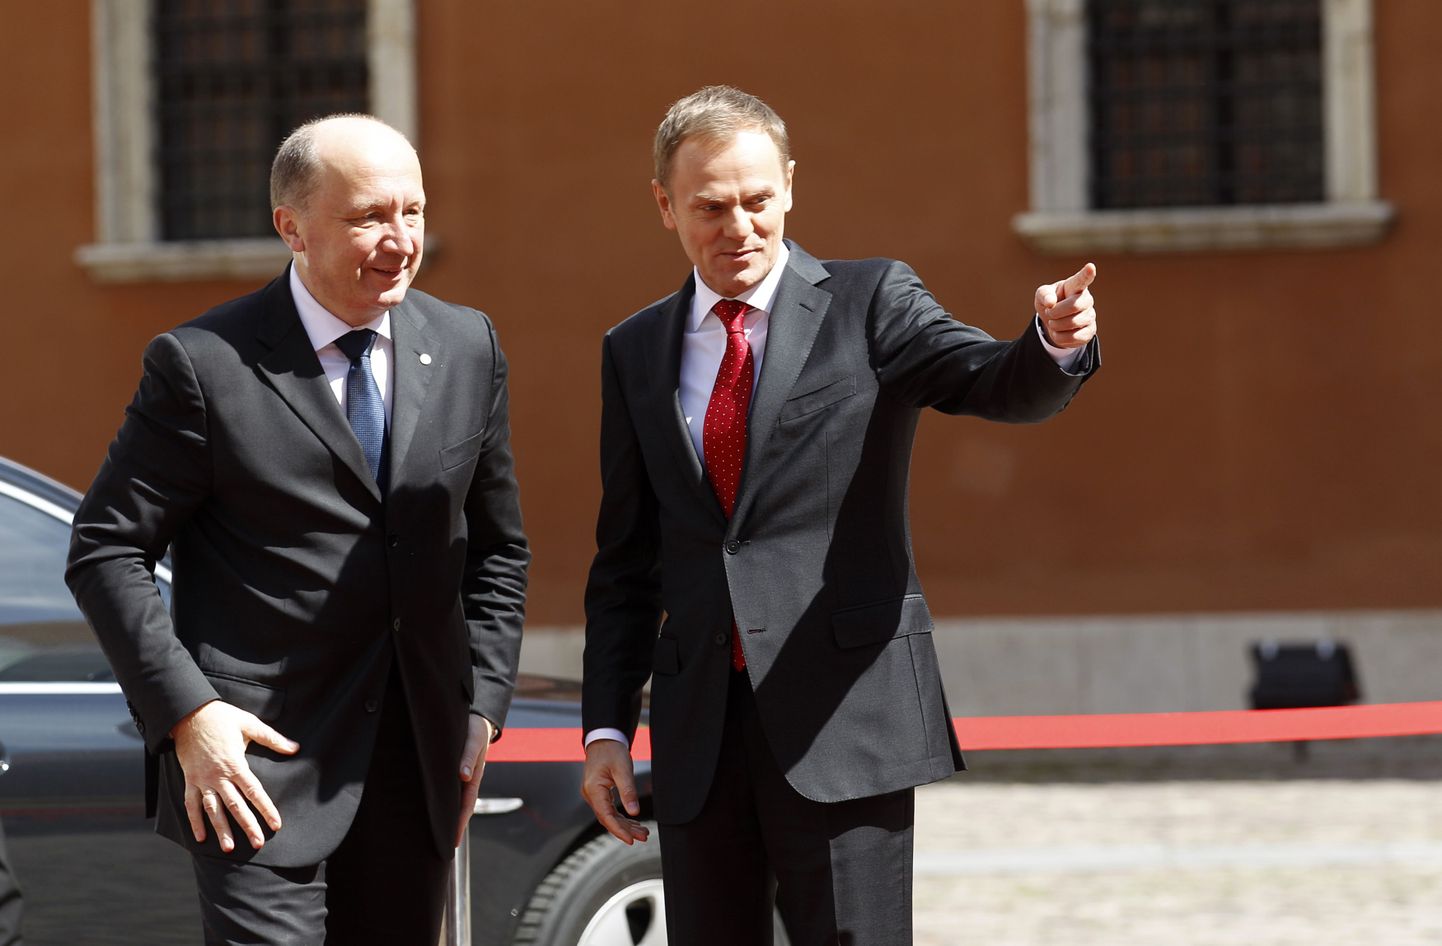 Leedu peaminister Andrius Kubilius (vasakul) koos Poola valitsusjuhi Donald Tuskiga.